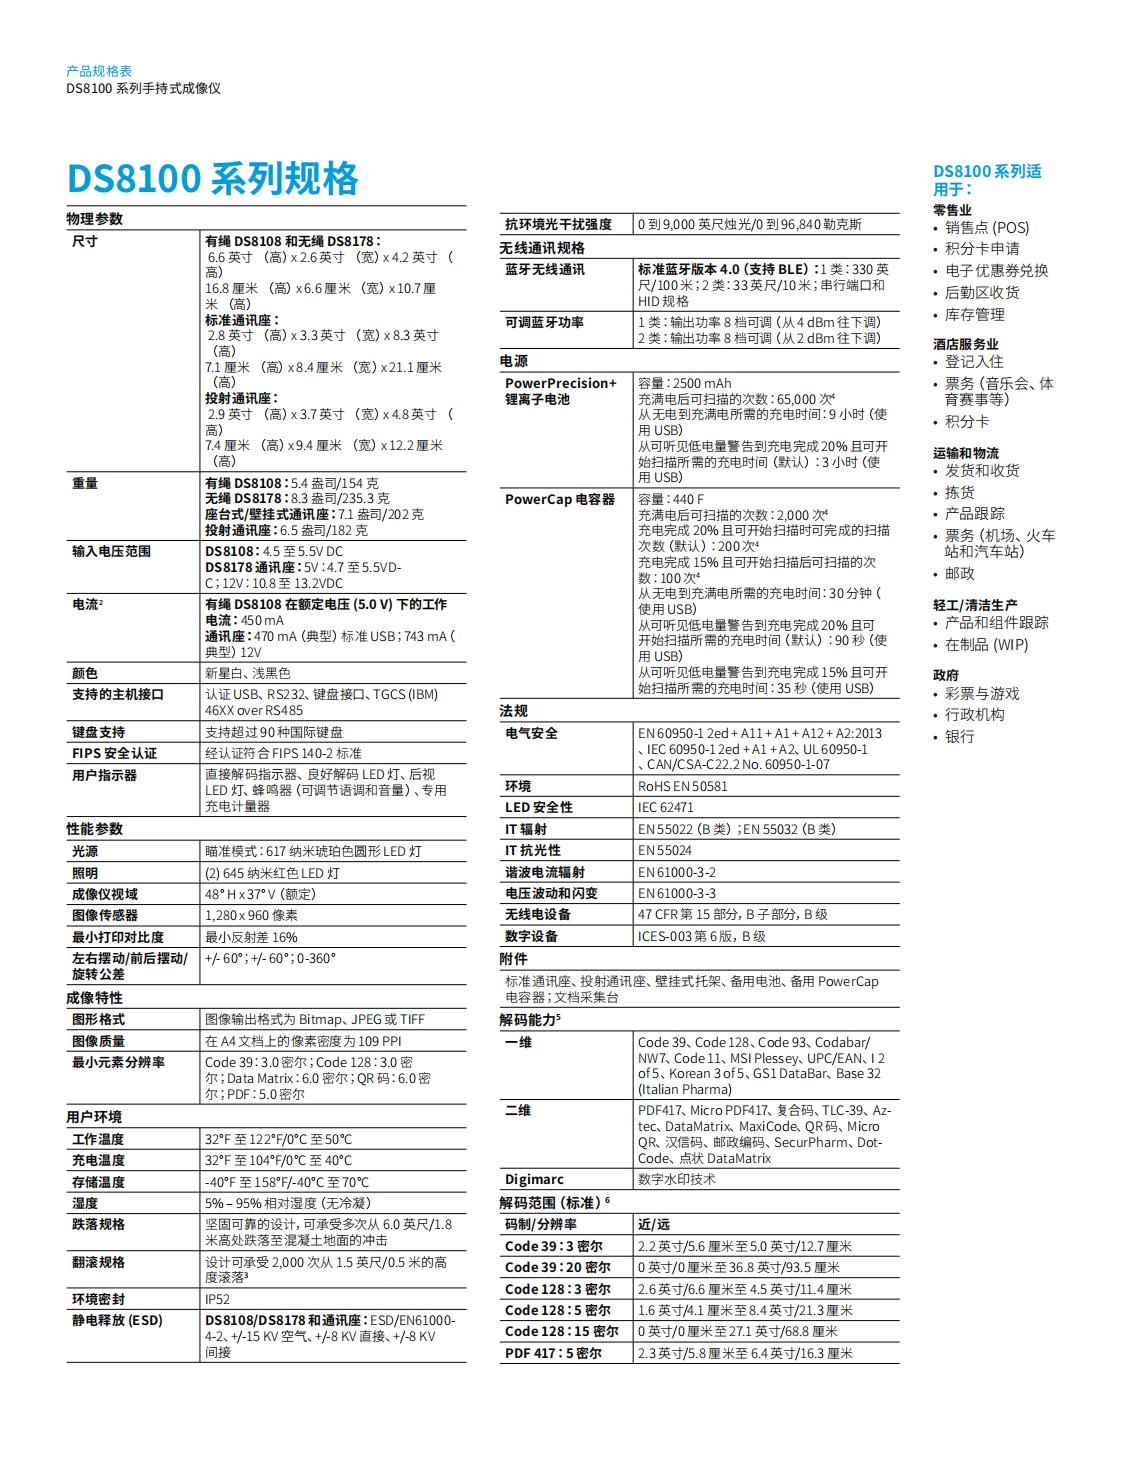 ds8100-series-spec-sheet-zh-cn_02.jpg